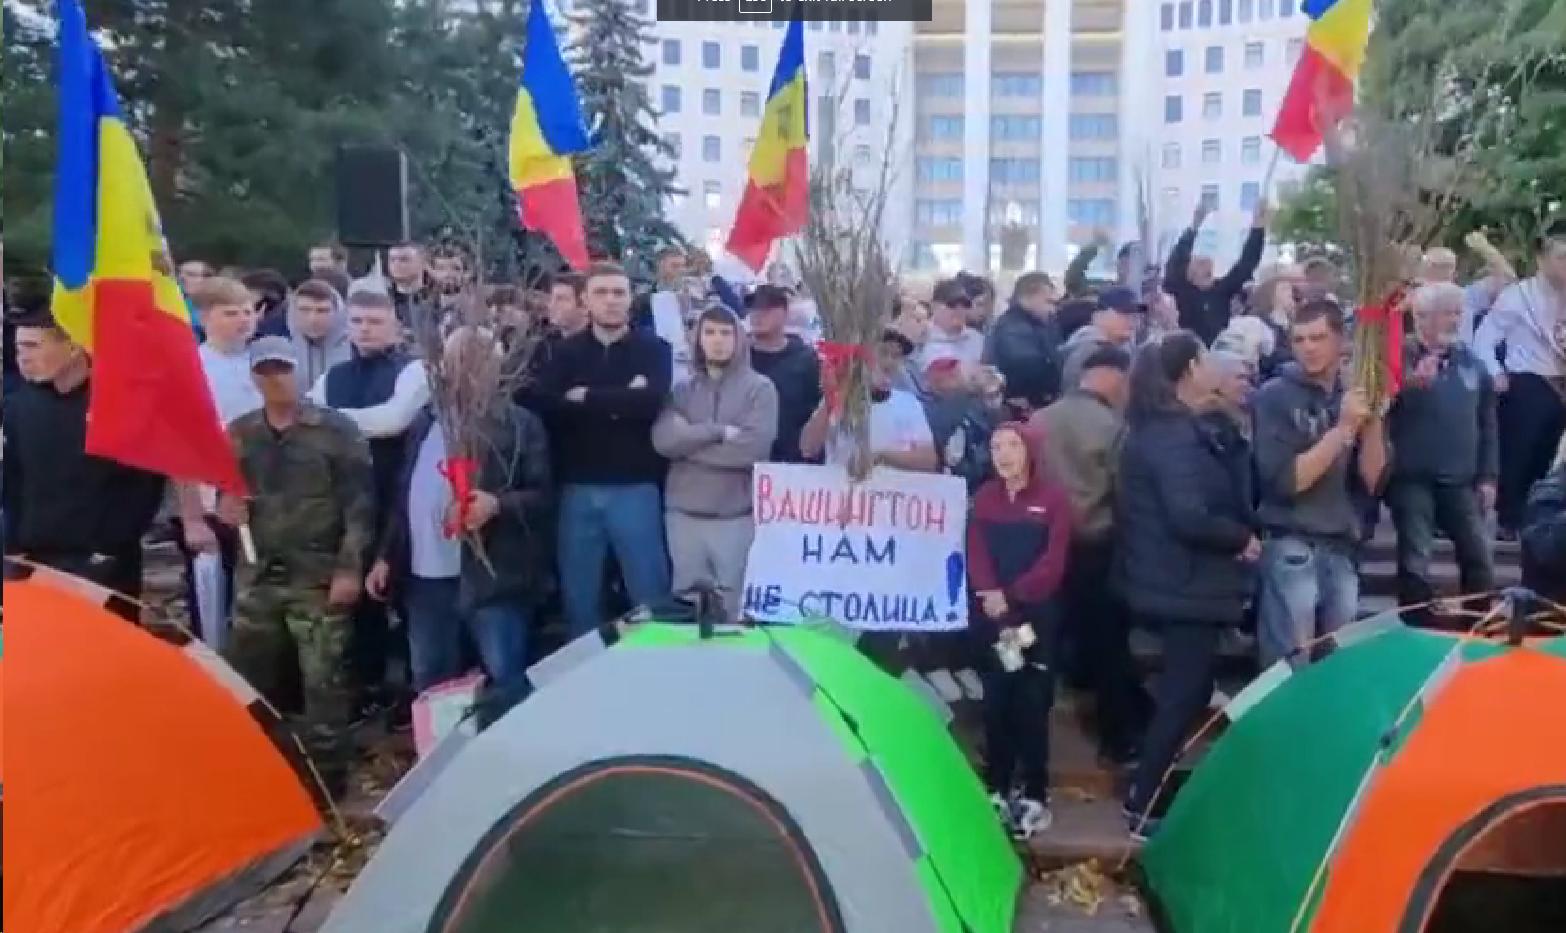 NOVI PROTESTI NA TLU EVROPE: Građani Moldavije izašli na ulice zbog inflacije i rasta cijena (VIDEO)